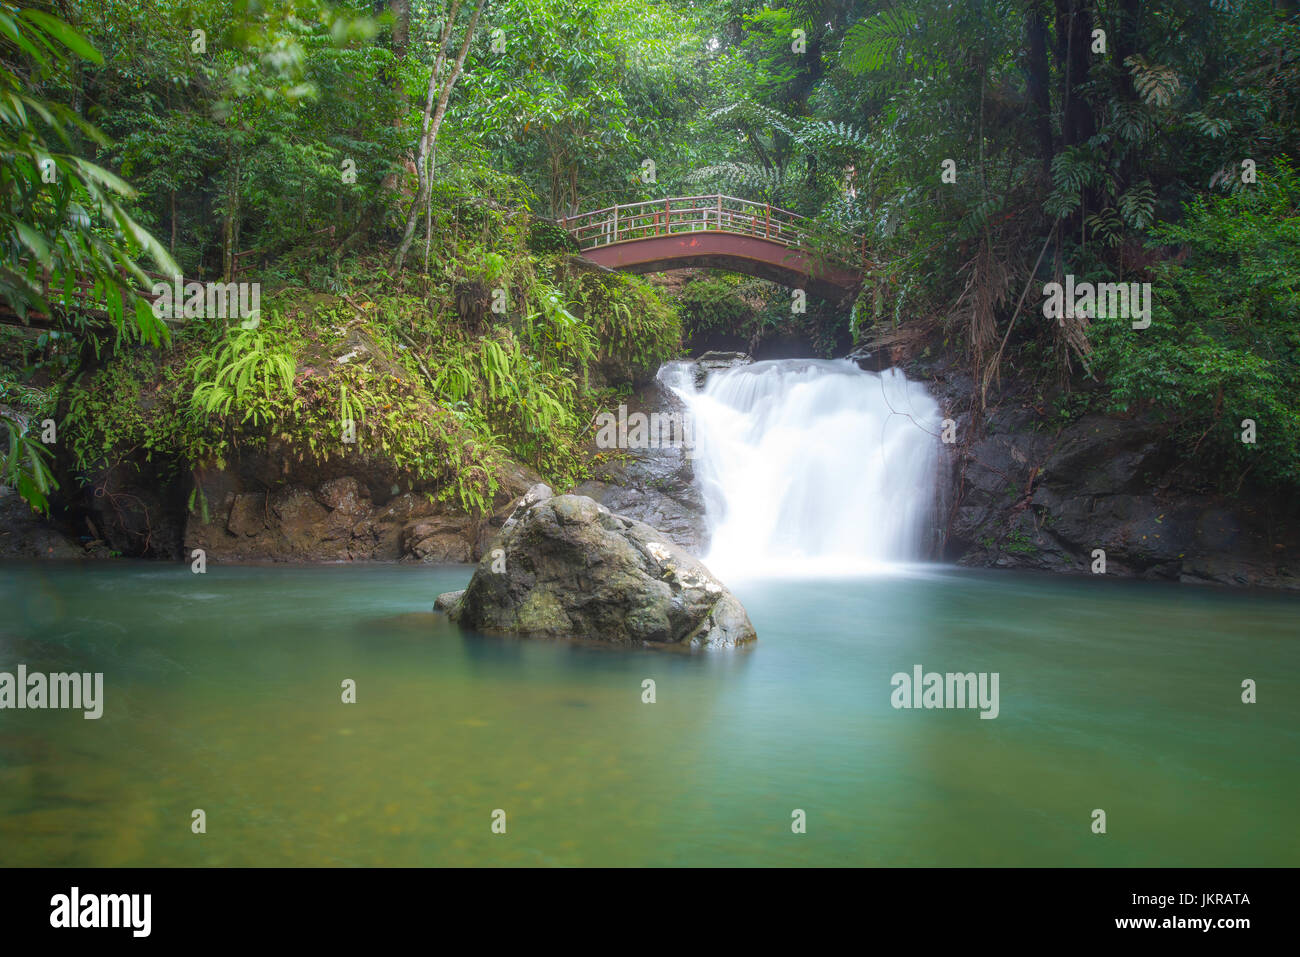 Un paisaje íntimo de una impresionante cascada y estanque de agua pura, rodeado por el verde de la vegetación. Ranchan Cascada, Sarawak en Malasia. Foto de stock